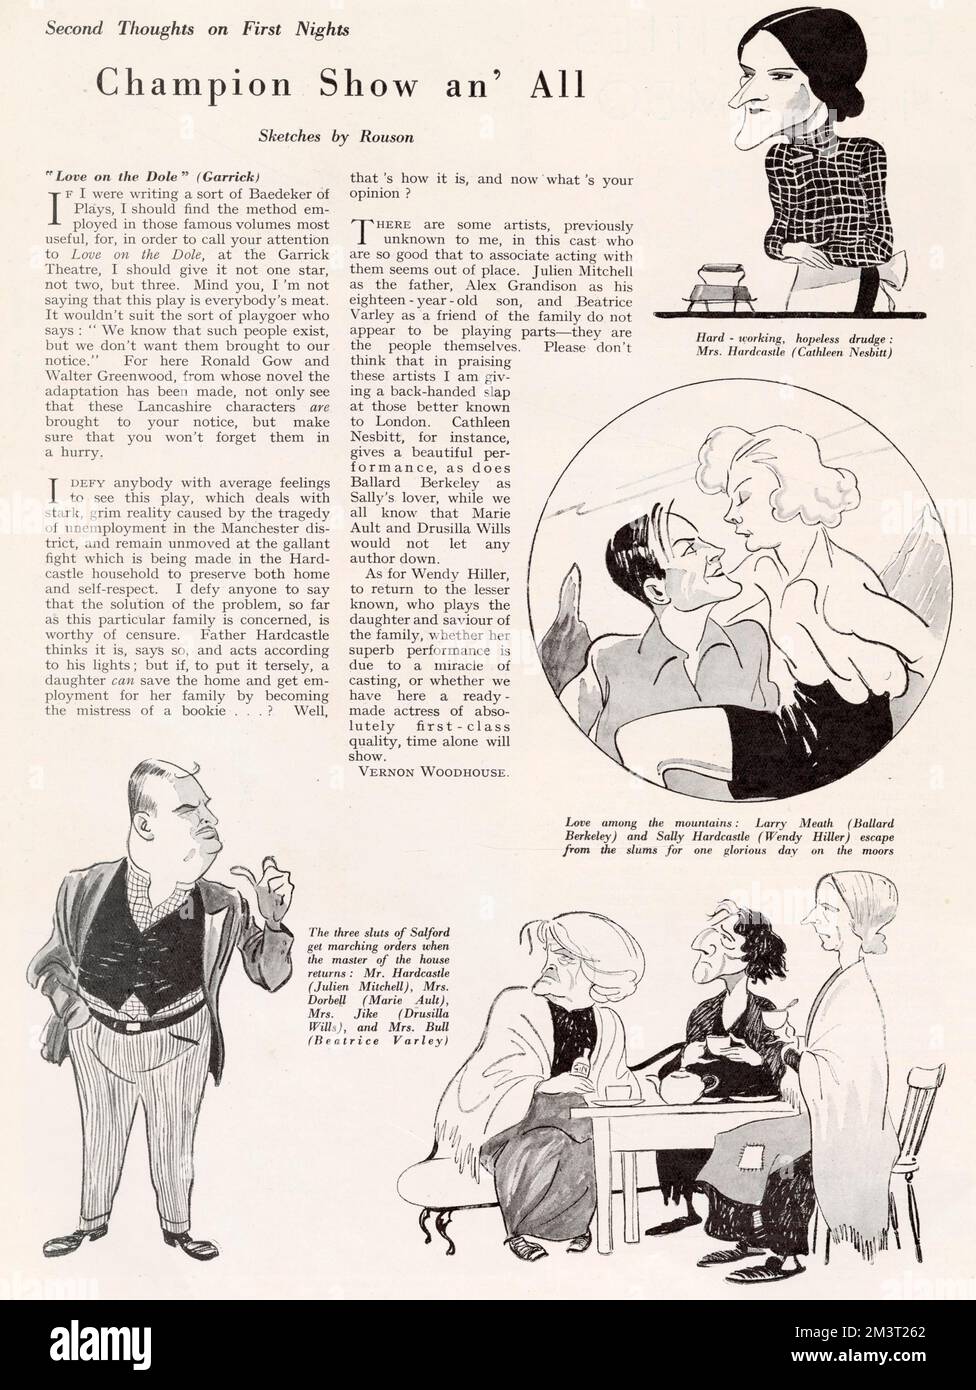 Recensione di "Love on the Dole" di Walter Greenwood al Garrick Theatre nella rivista Bystander, completa di caricature dei personaggi principali di Rouson. Foto Stock